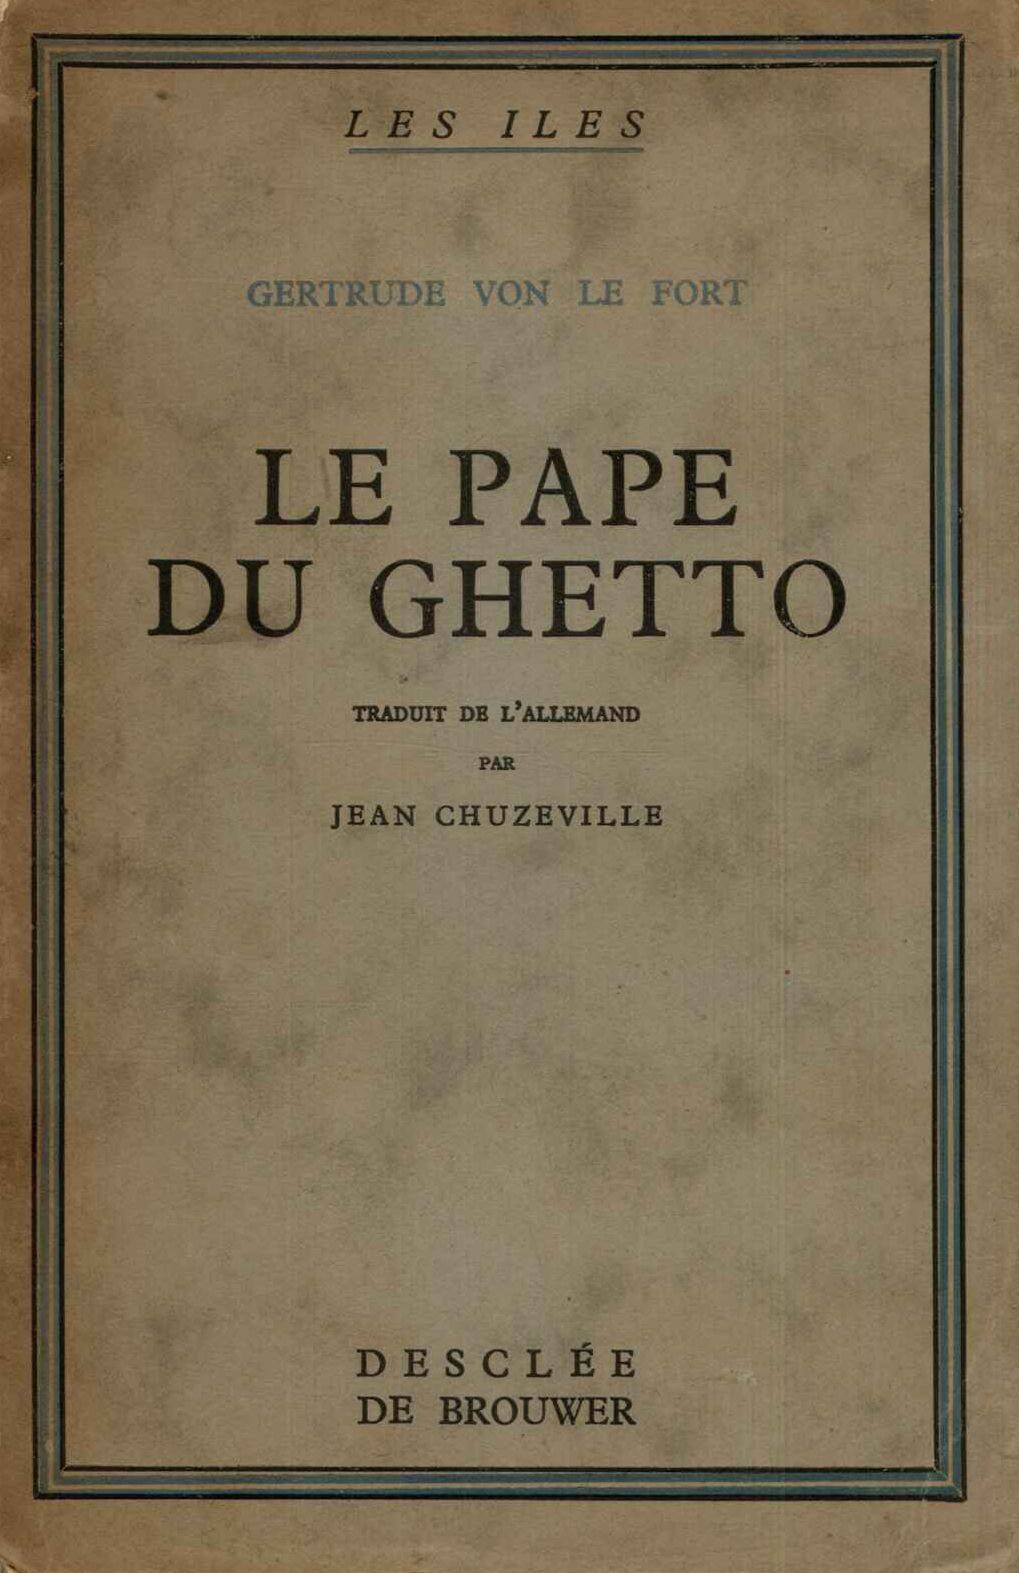 Le Pape du ghetto